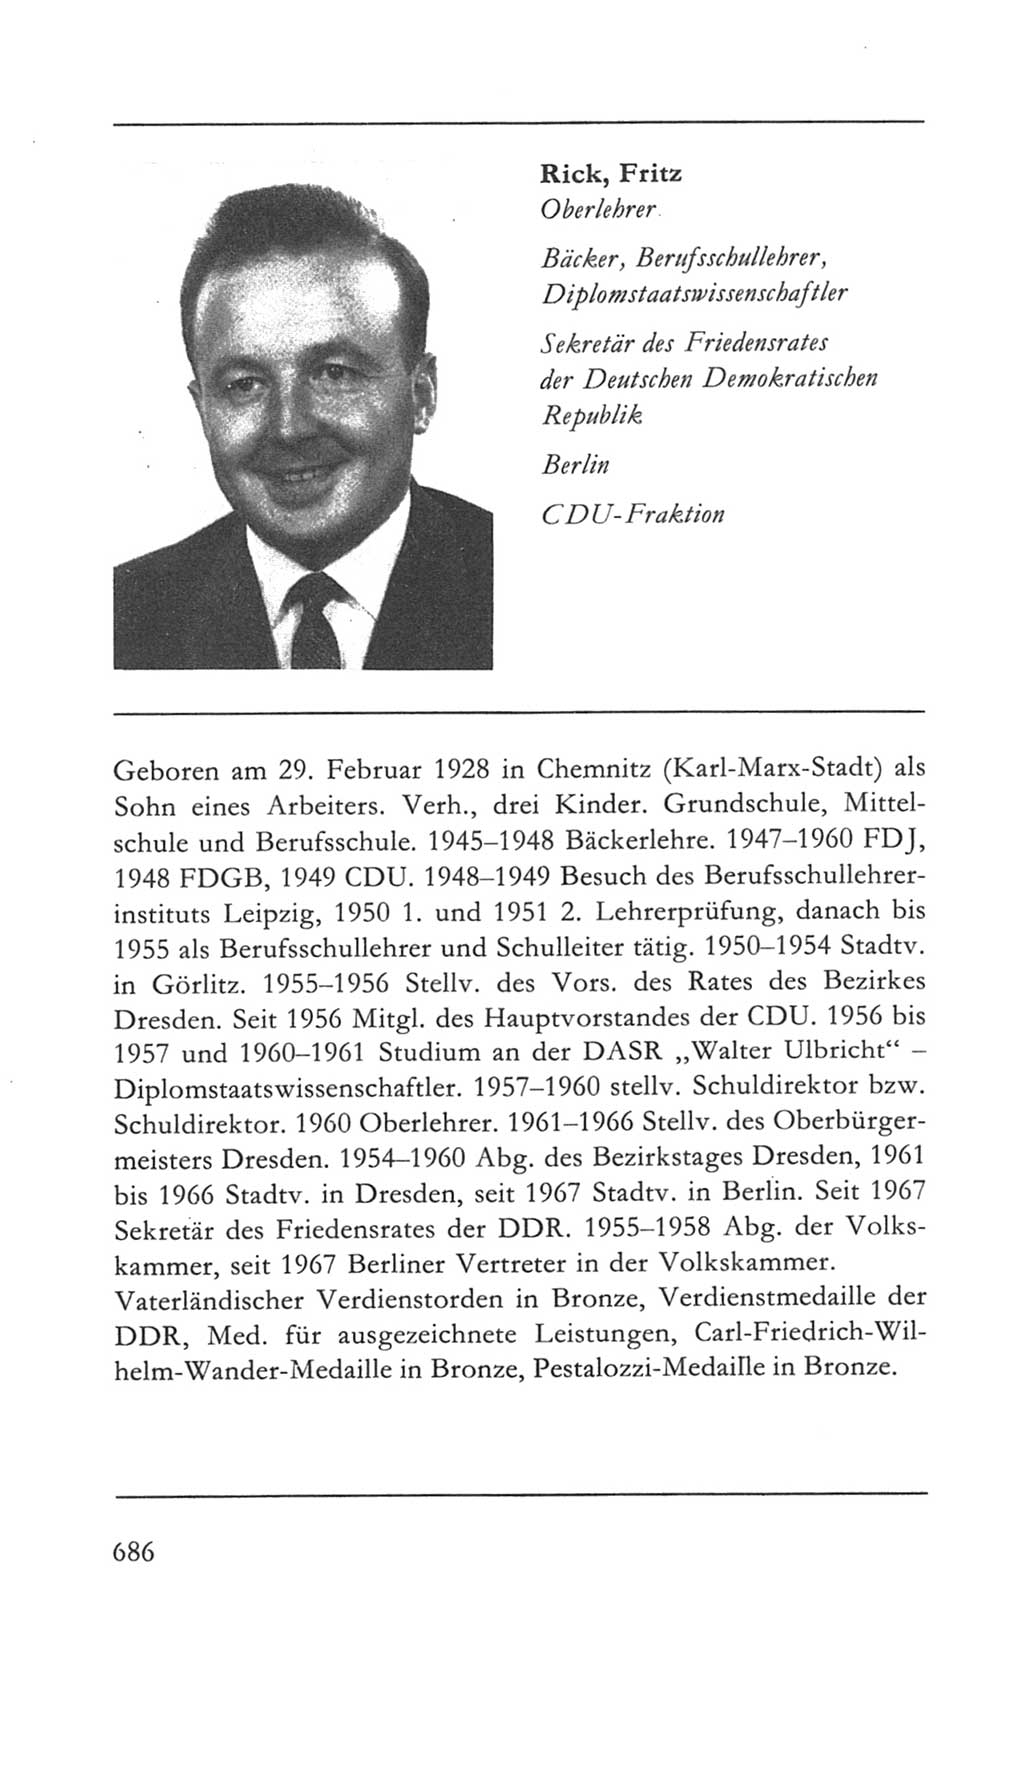 Volkskammer (VK) der Deutschen Demokratischen Republik (DDR) 5. Wahlperiode 1967-1971, Seite 686 (VK. DDR 5. WP. 1967-1971, S. 686)